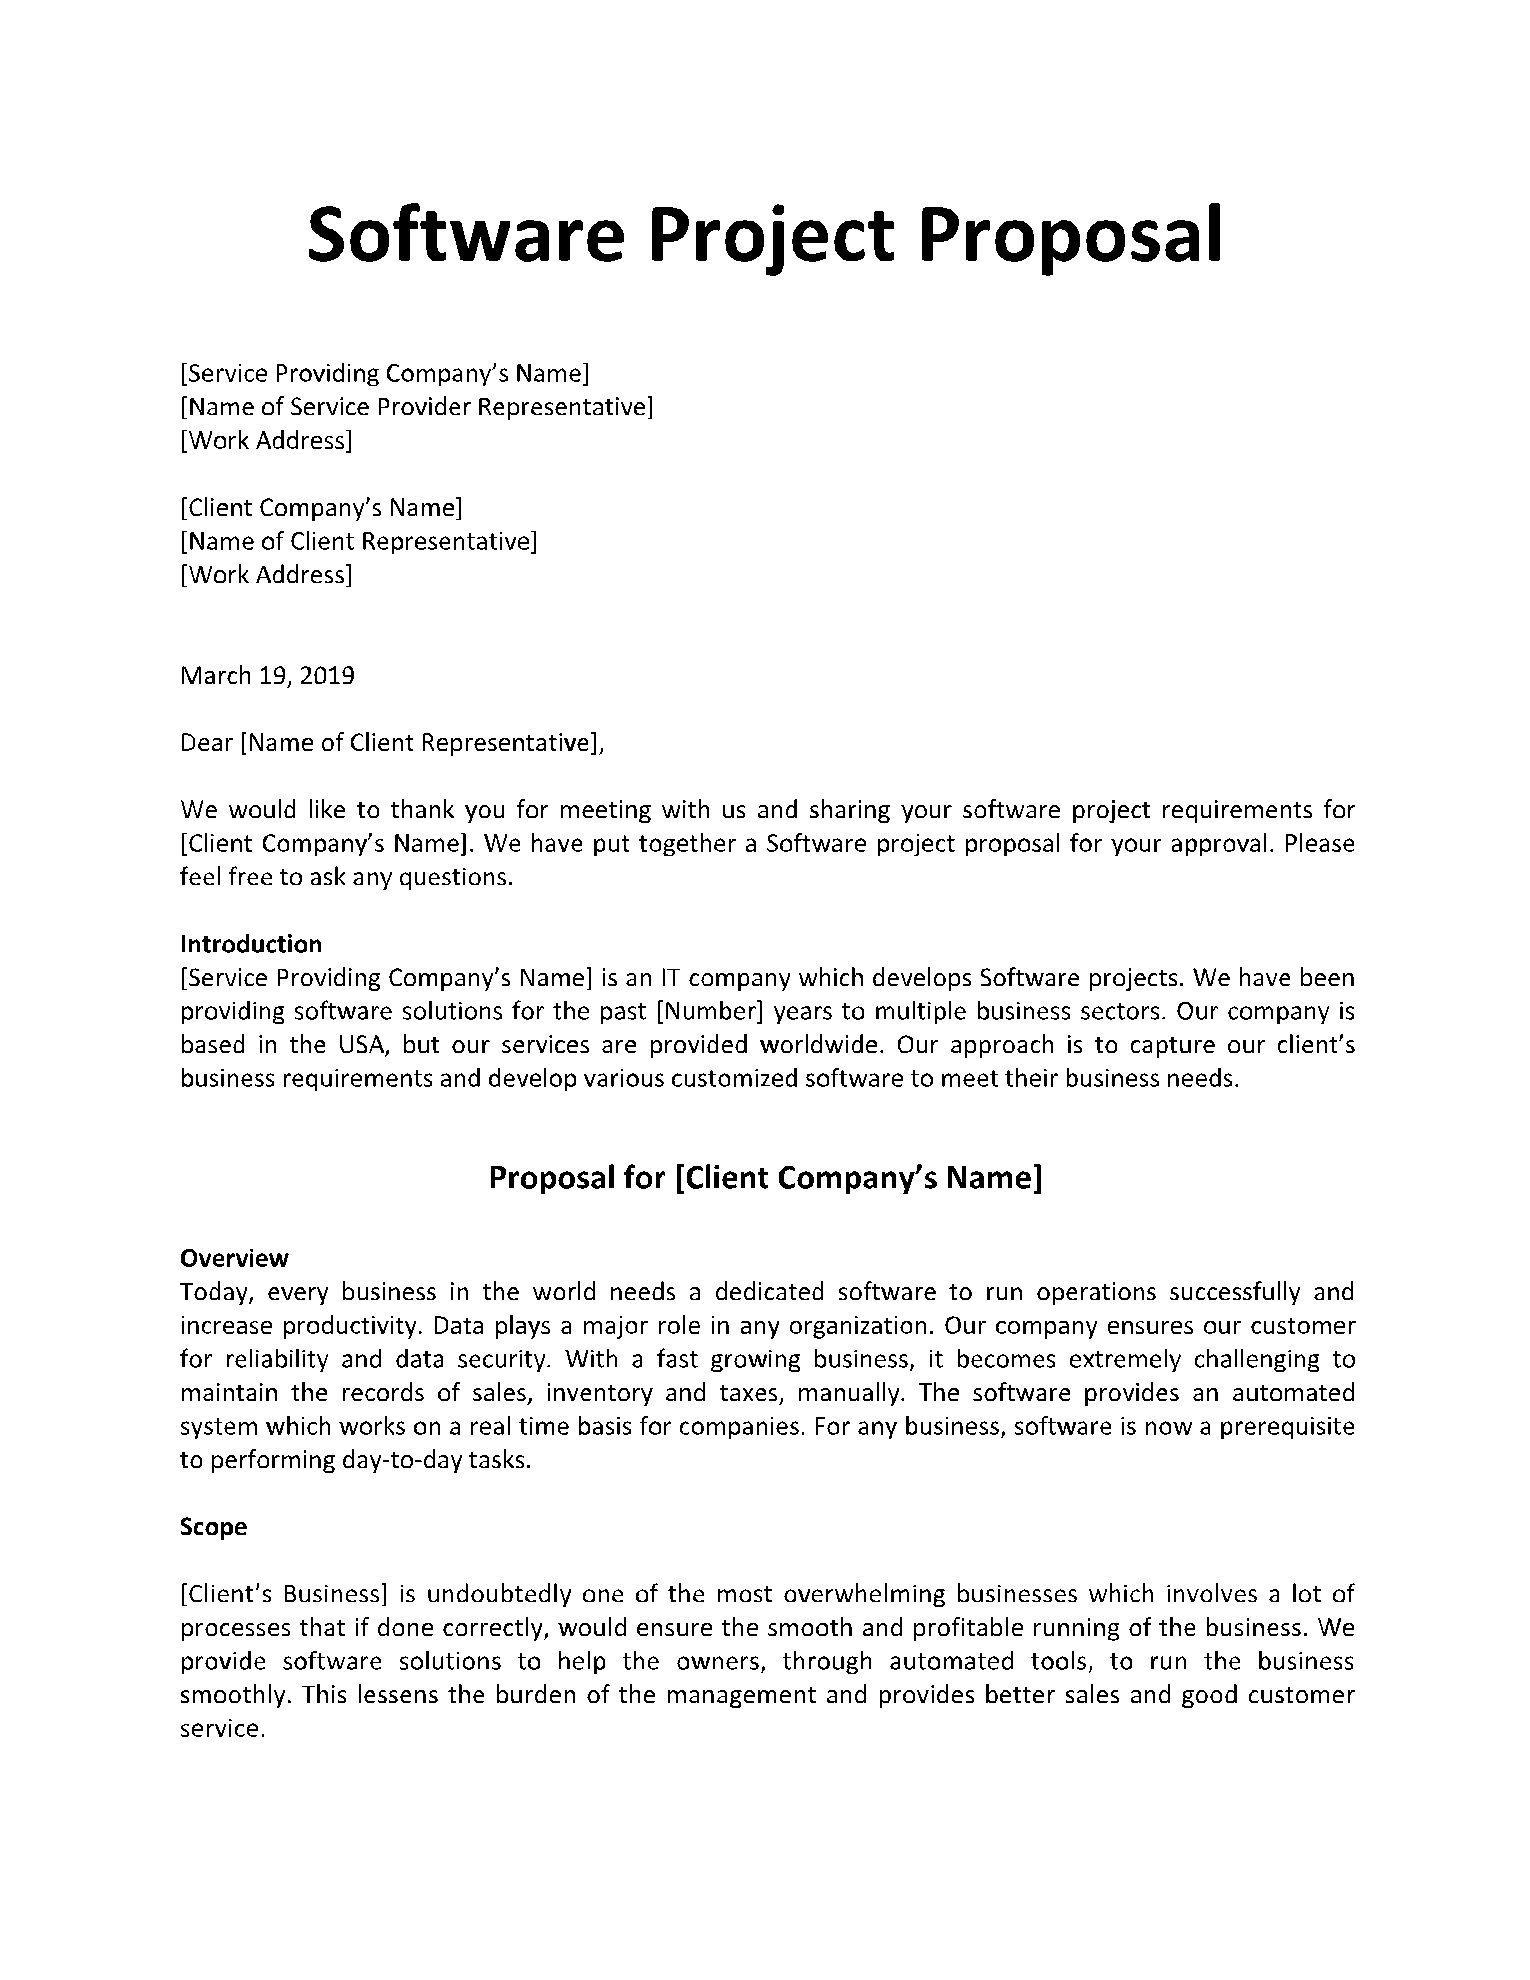 Software Development Proposal 2